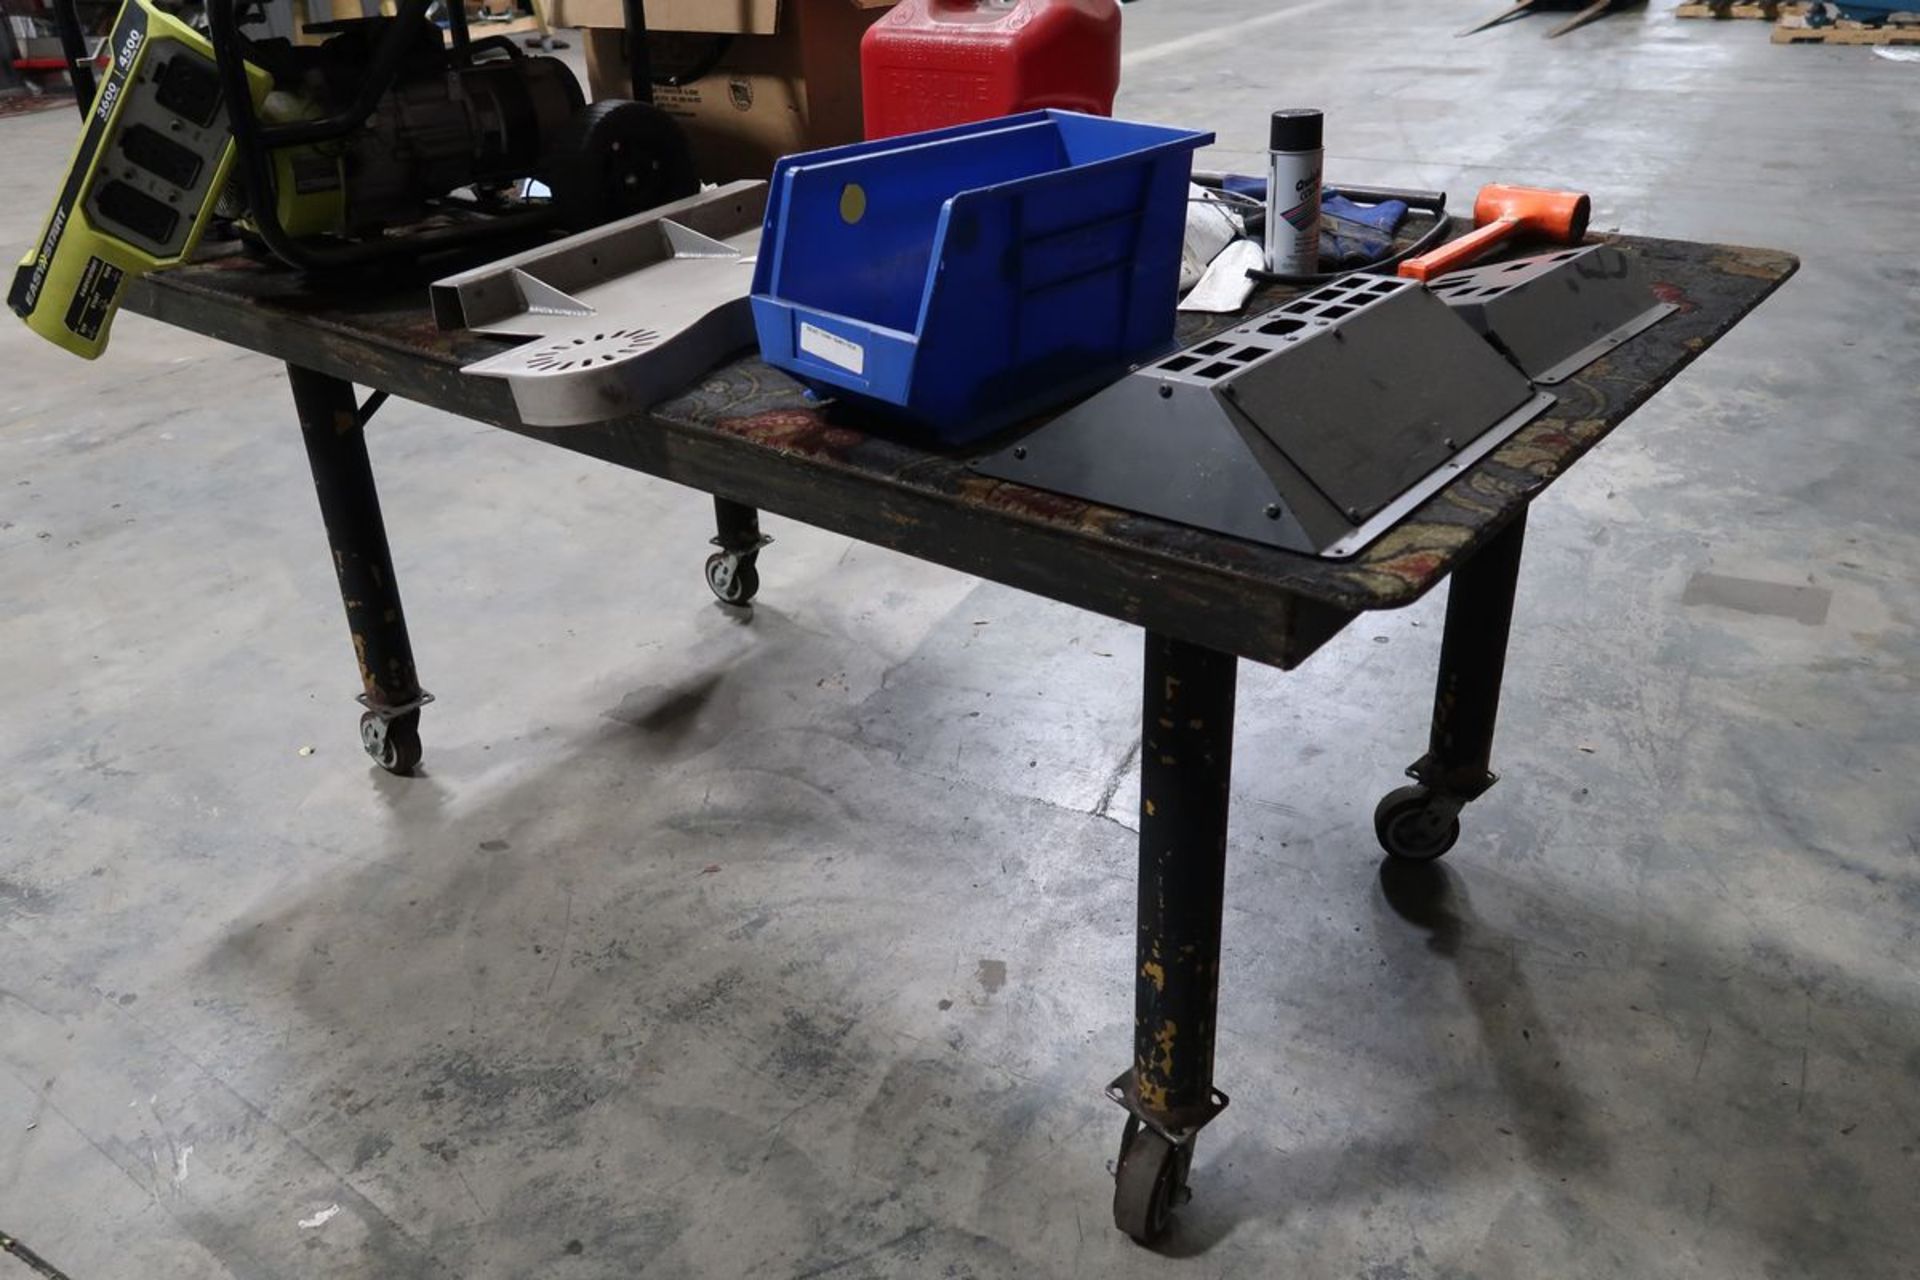 Heavy Duty Steel Table on Castors - Image 2 of 2